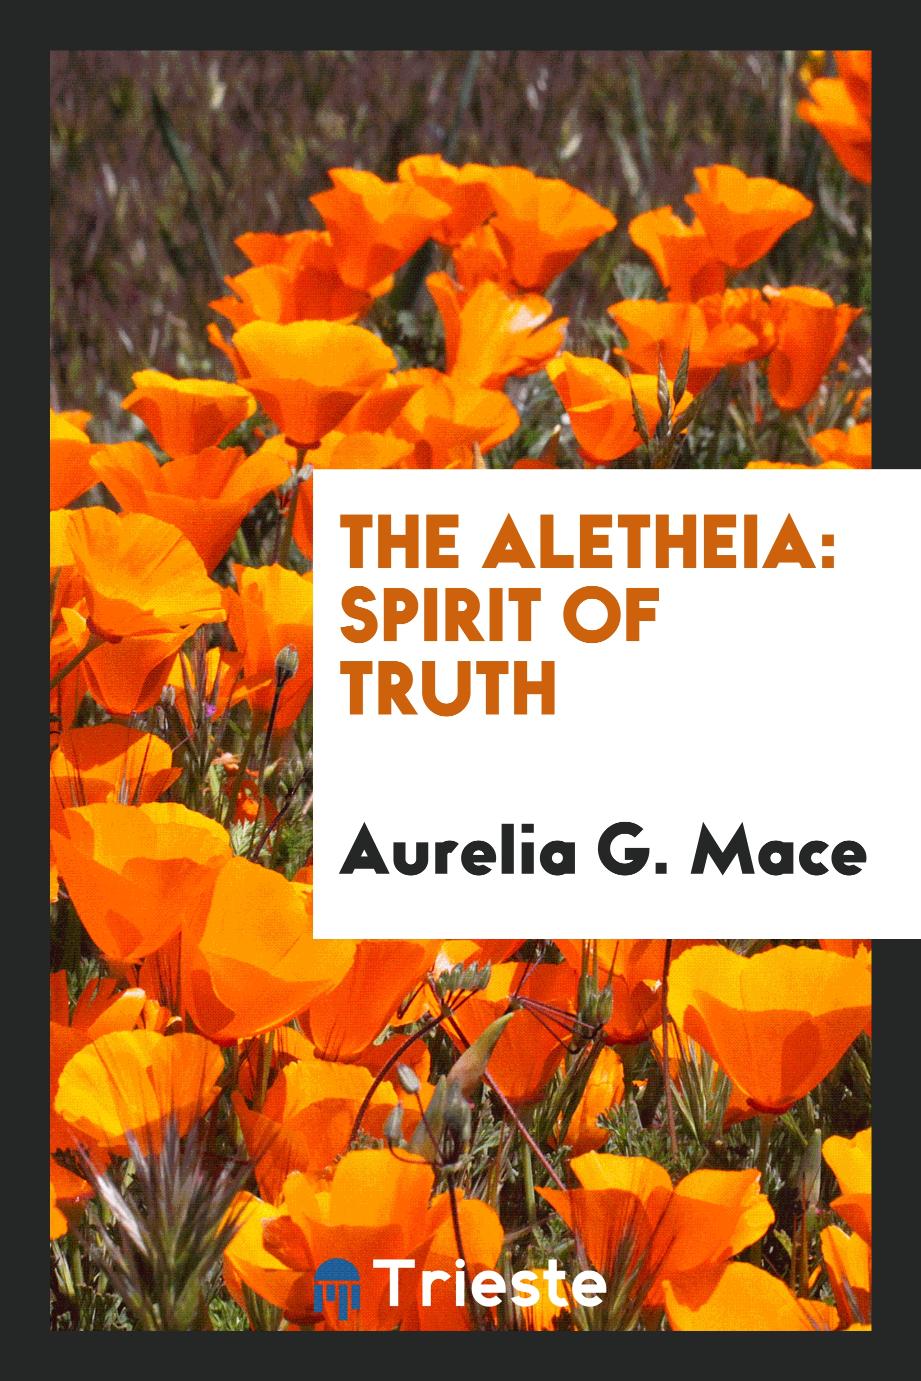 The aletheia: spirit of truth